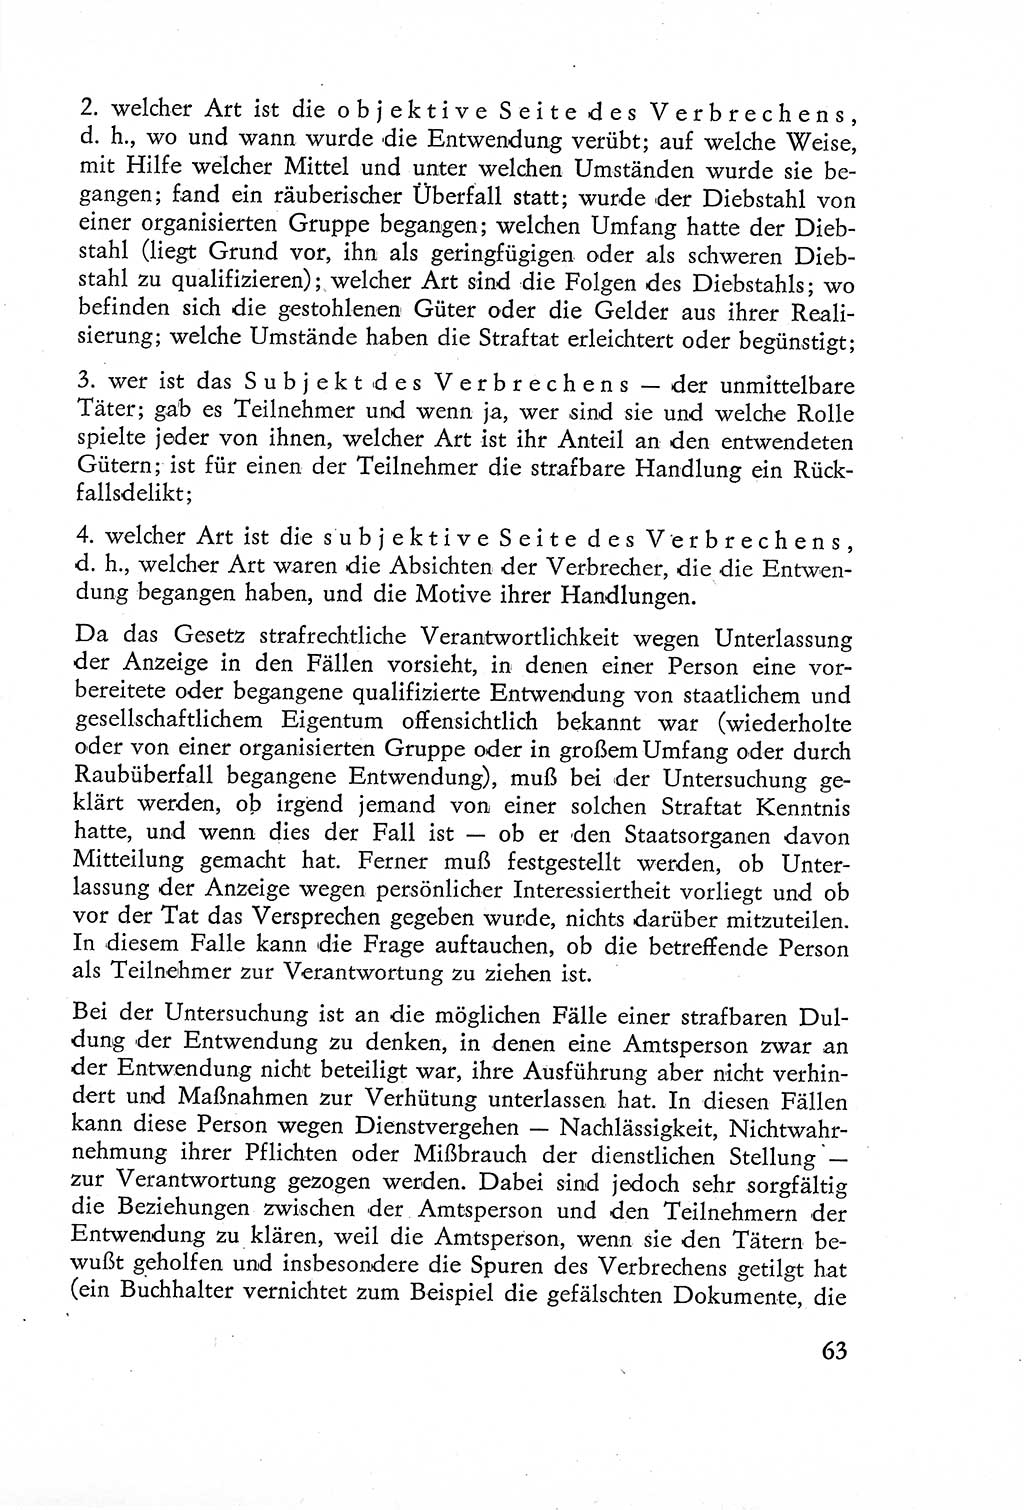 Die Untersuchung einzelner Verbrechensarten [Deutsche Demokratische Republik (DDR)] 1960, Seite 63 (Unters. Verbr.-Art. DDR 1960, S. 63)